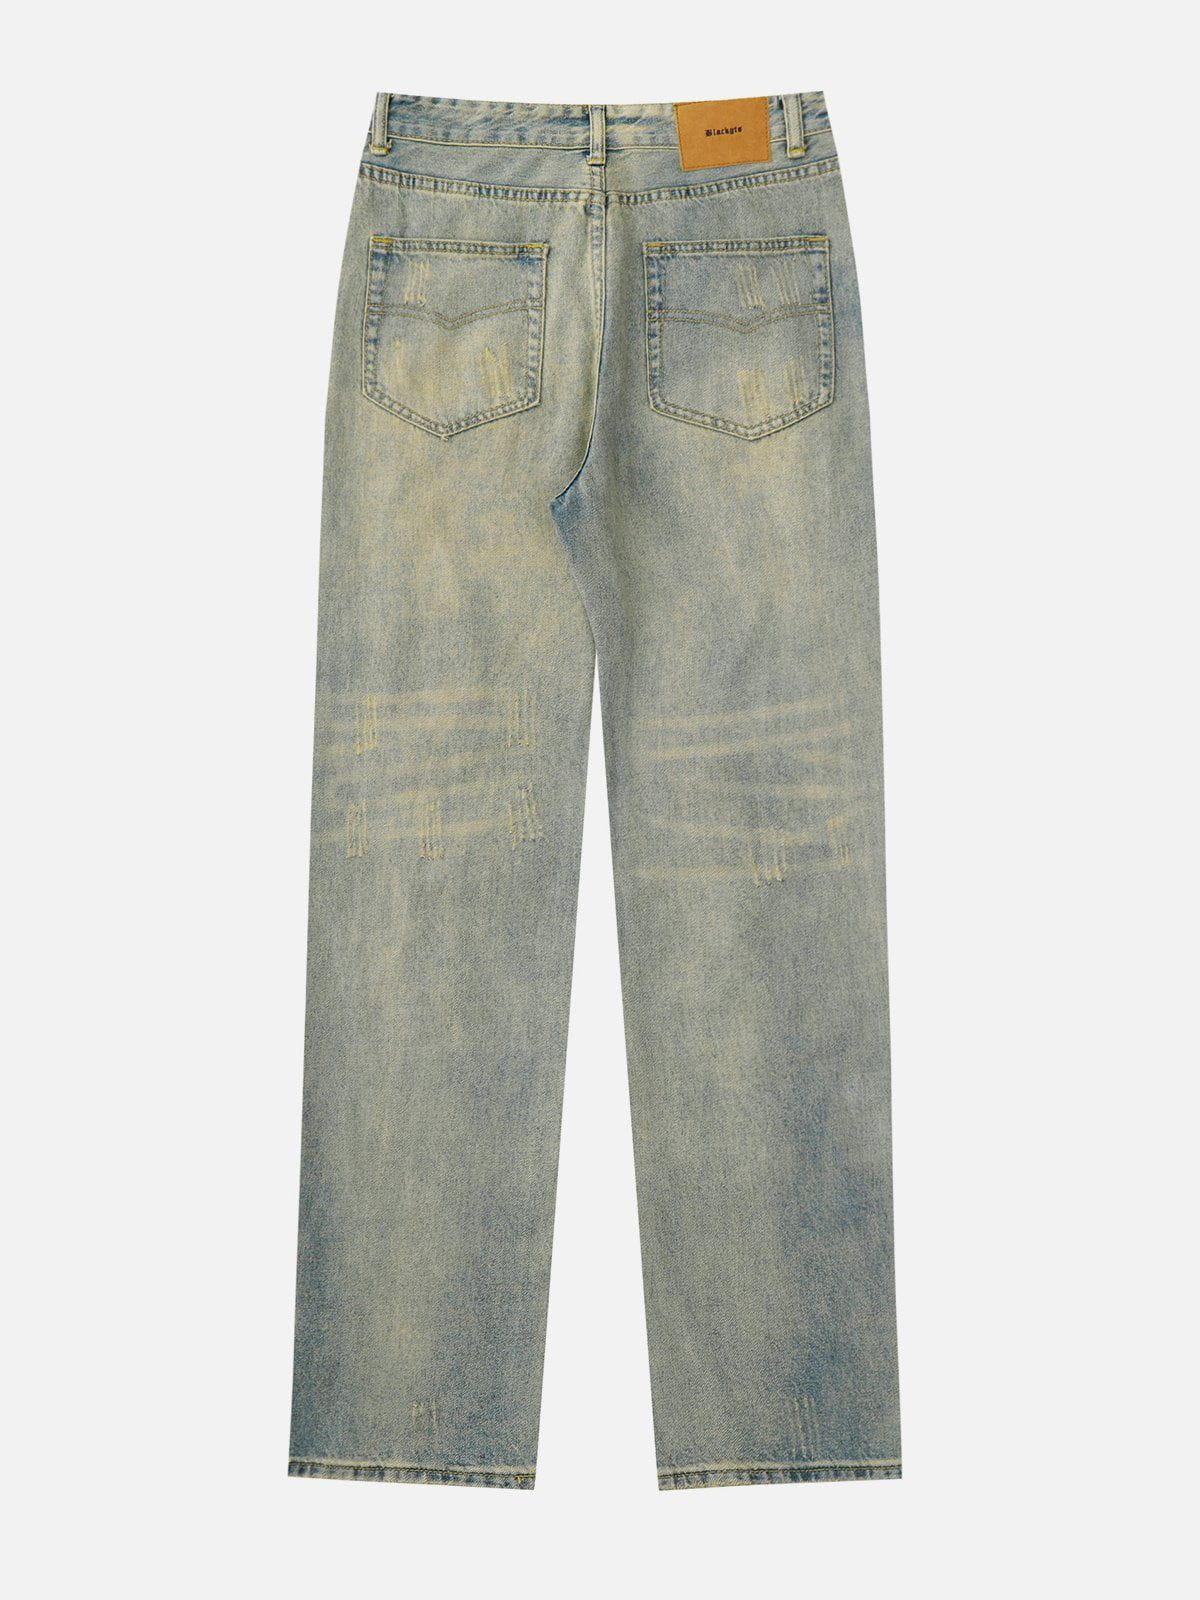 Eprezzy® - Distressed Washed Jeans Streetwear Fashion - eprezzy.com